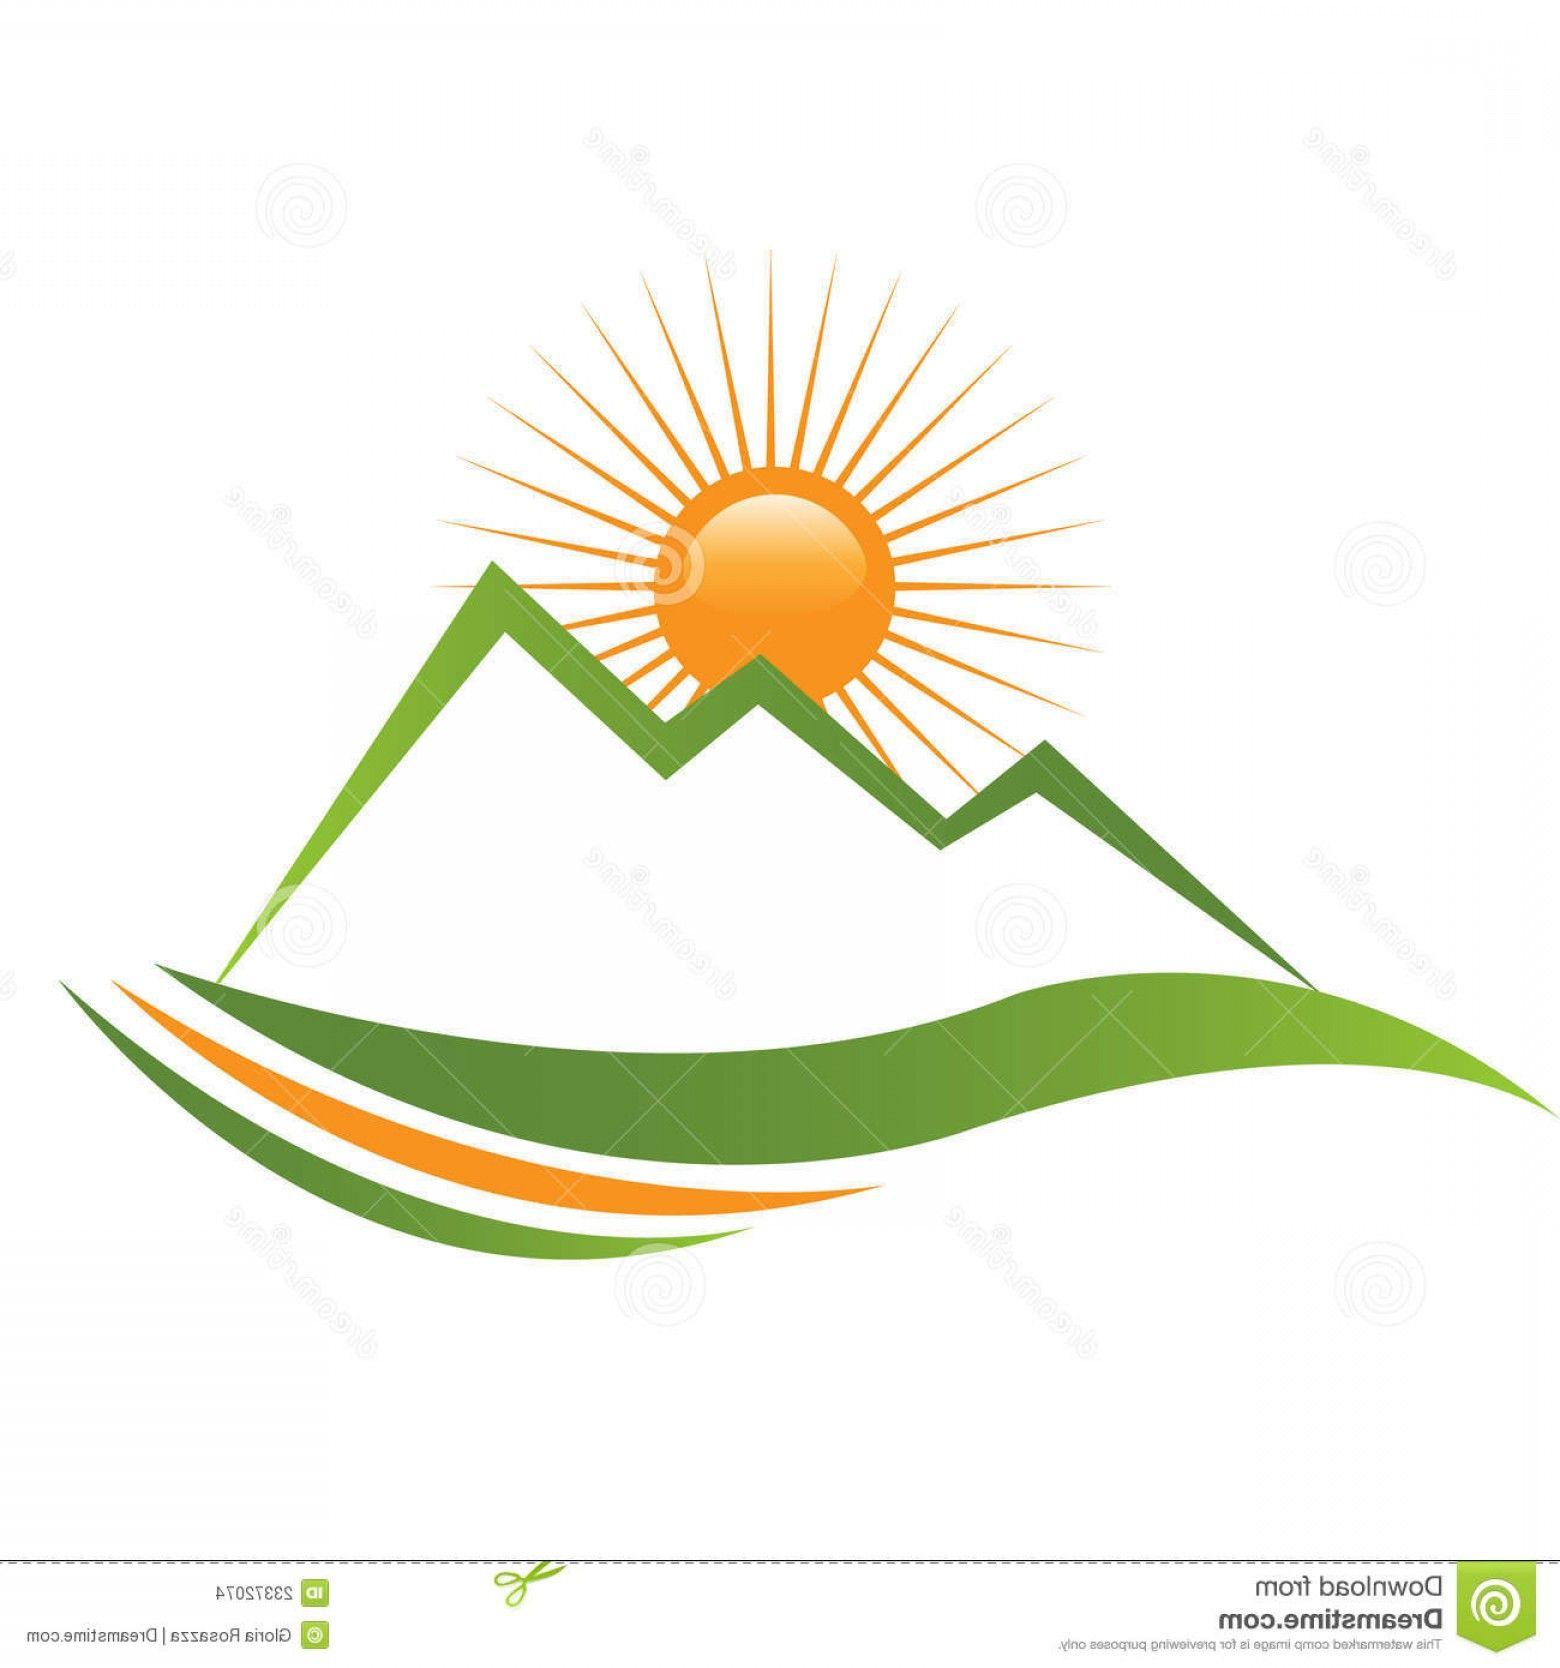 Sun and Mountain Logo - Stock Images Ecologycal Sun Mountain Logo Image | SHOPATCLOTH